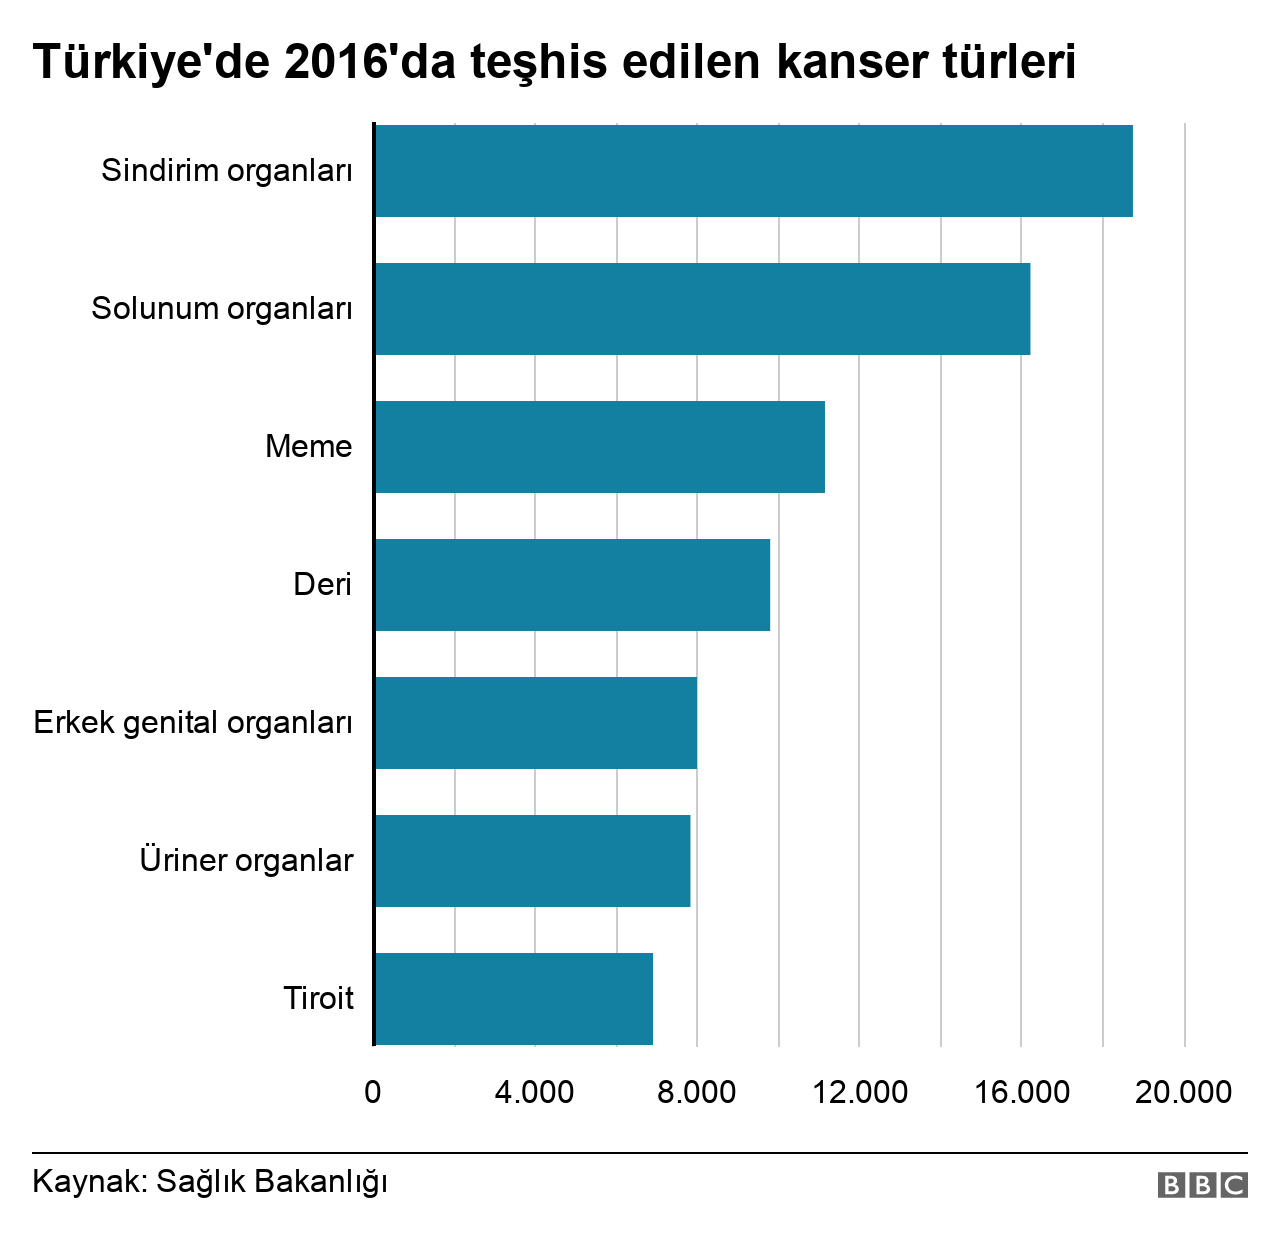 Türkiye'de kanser istatistikleri